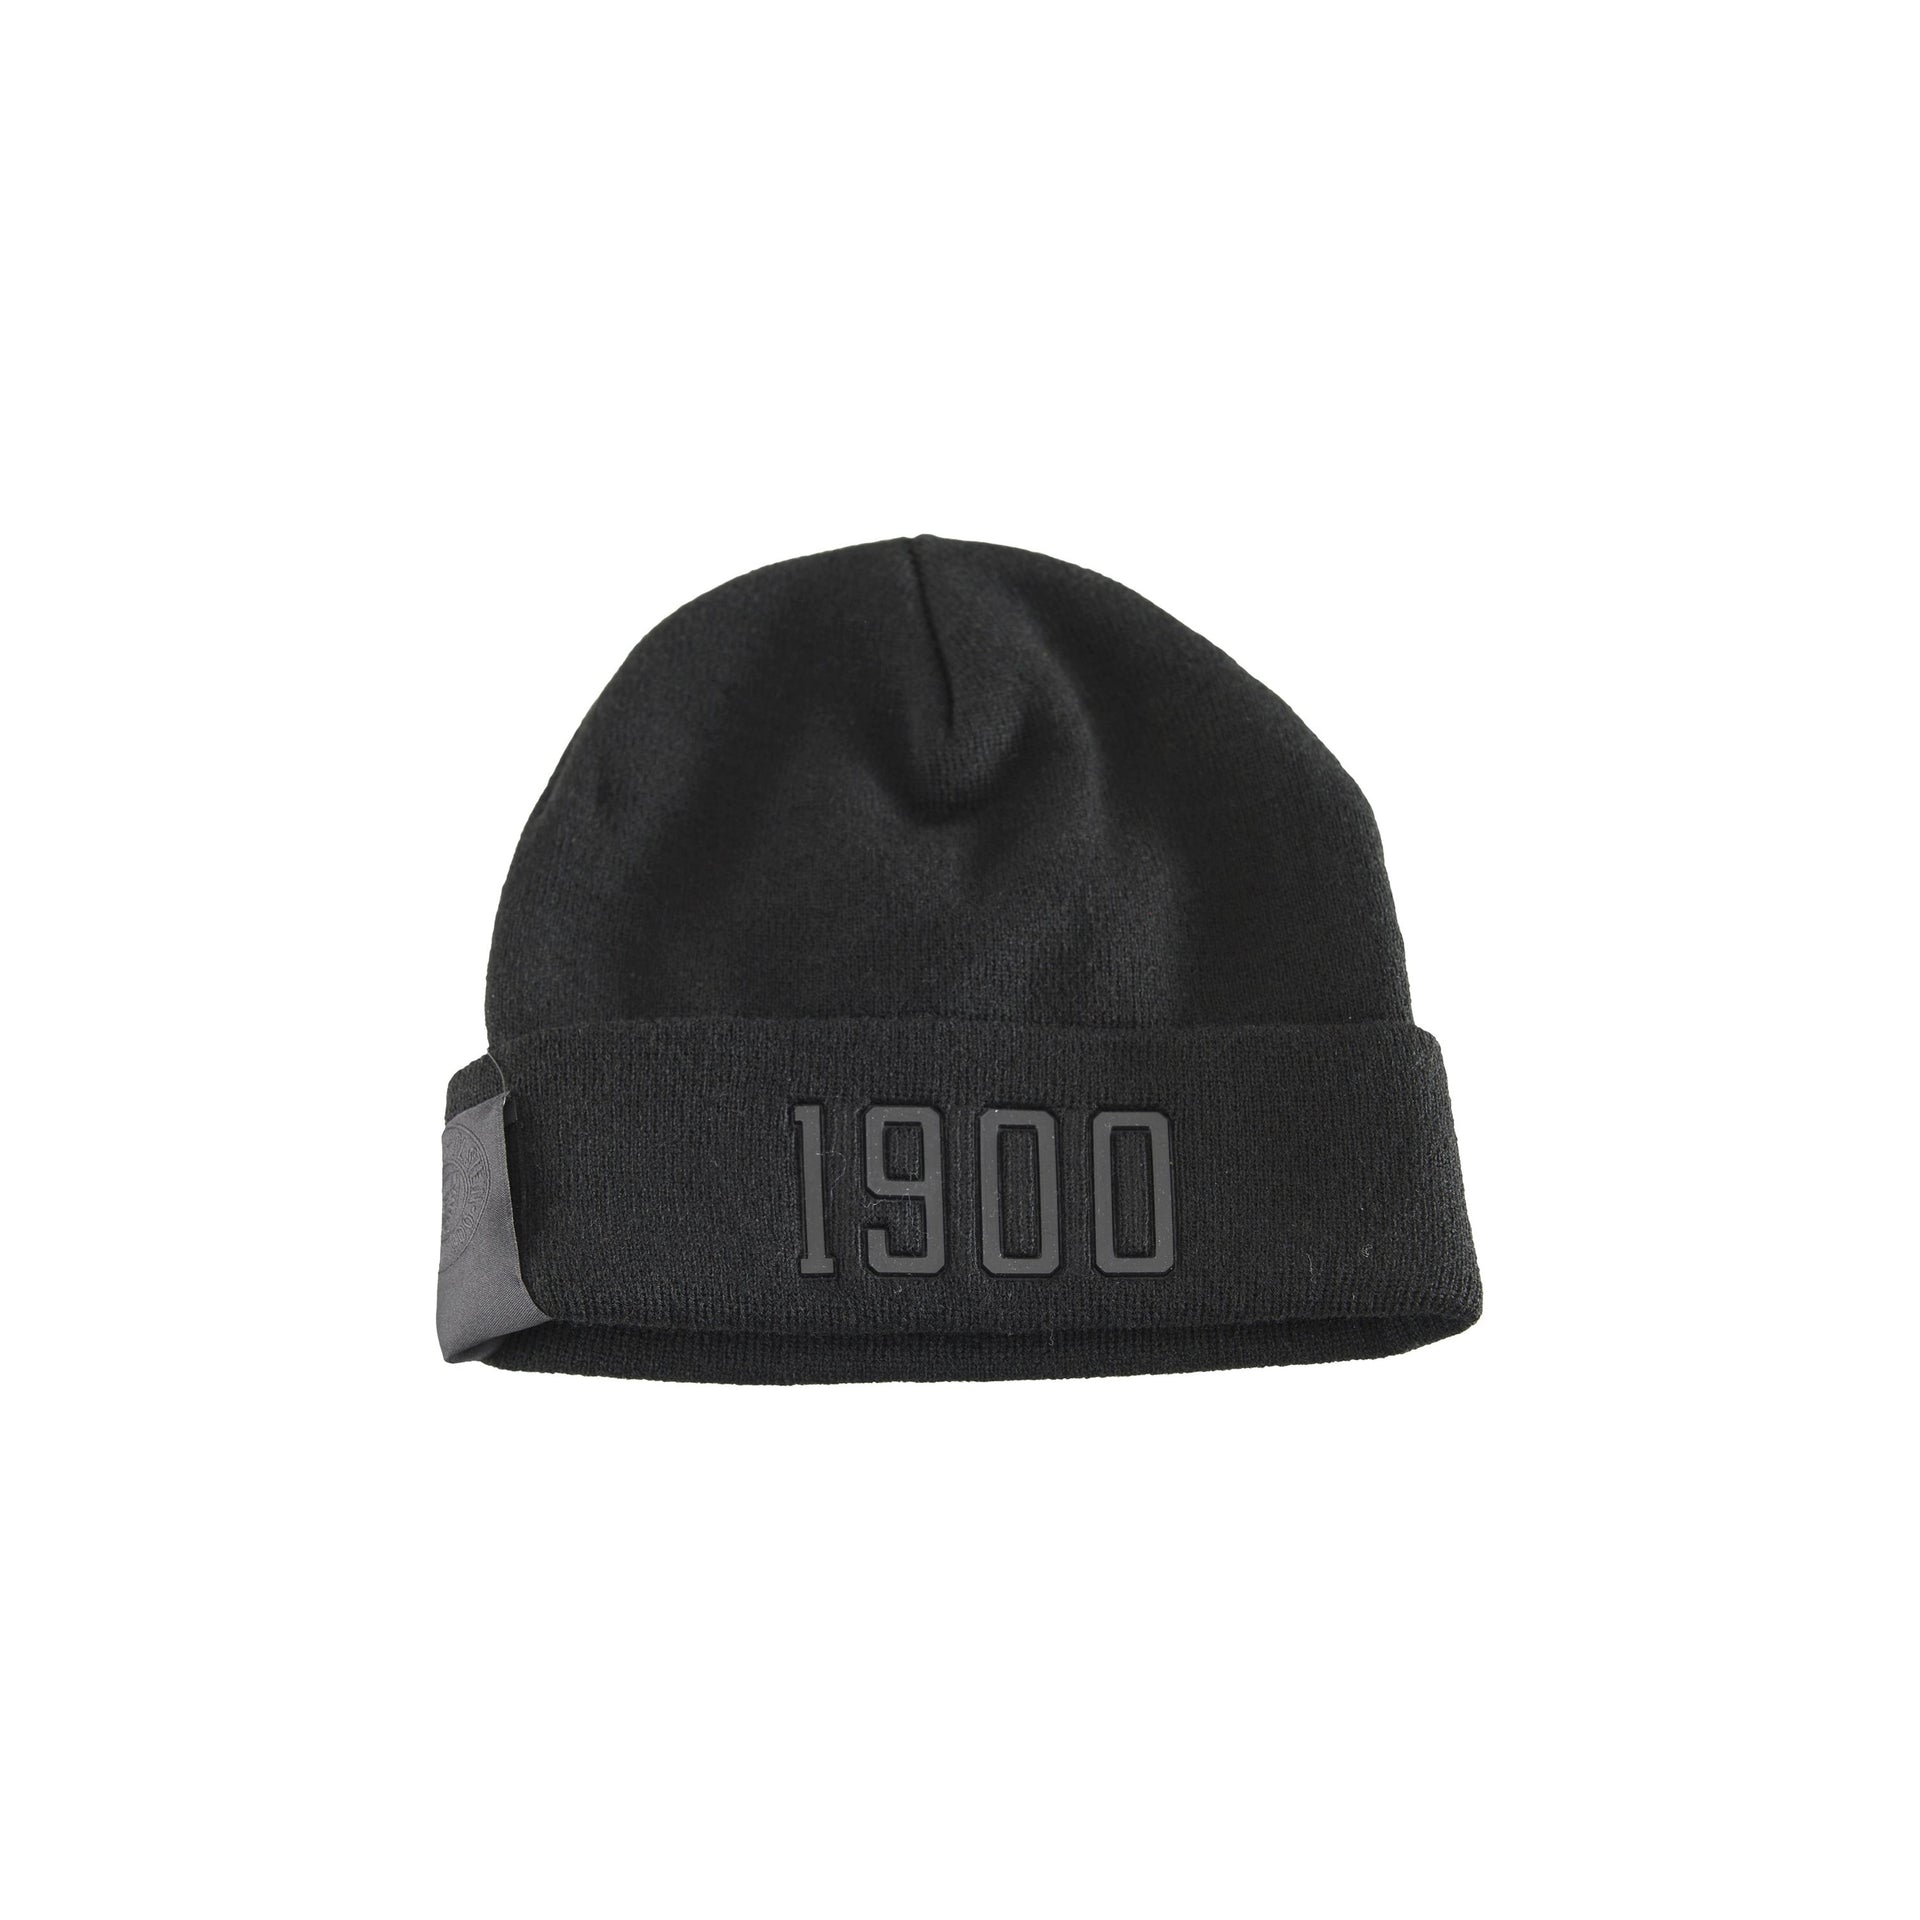 Mütze Krempe 1900 - NEU – Holstein-Fanshop